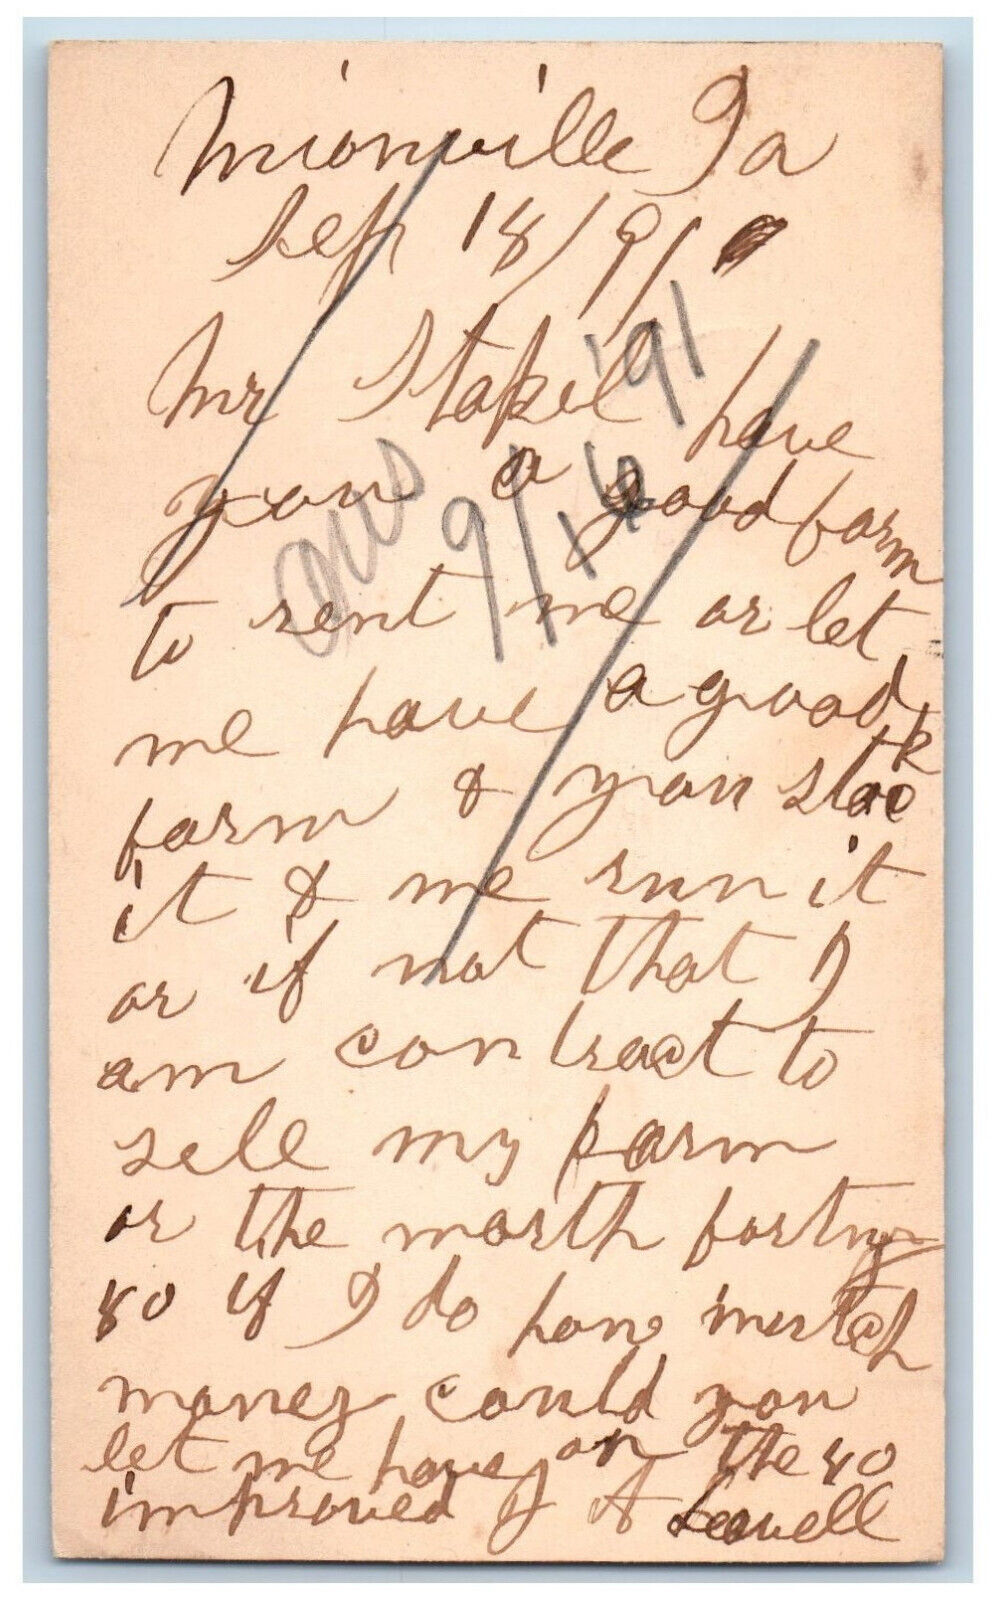 Unionville Iowa IA Bloomfield IA Postal Card Farm Letter 1891 Posted Antique